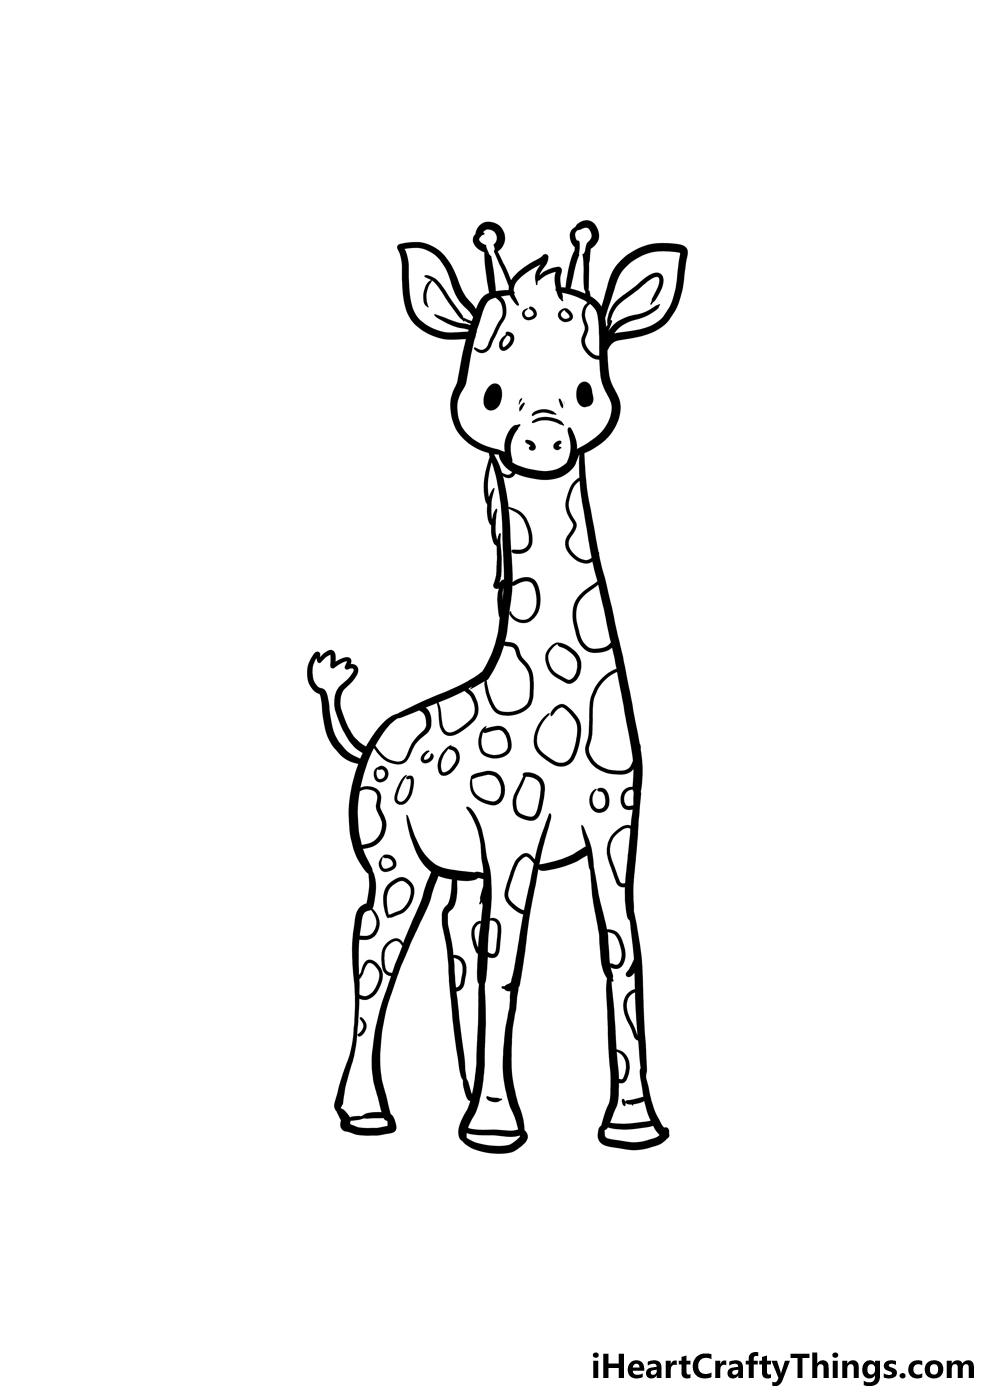 How to Draw A Cute Giraffe step 5